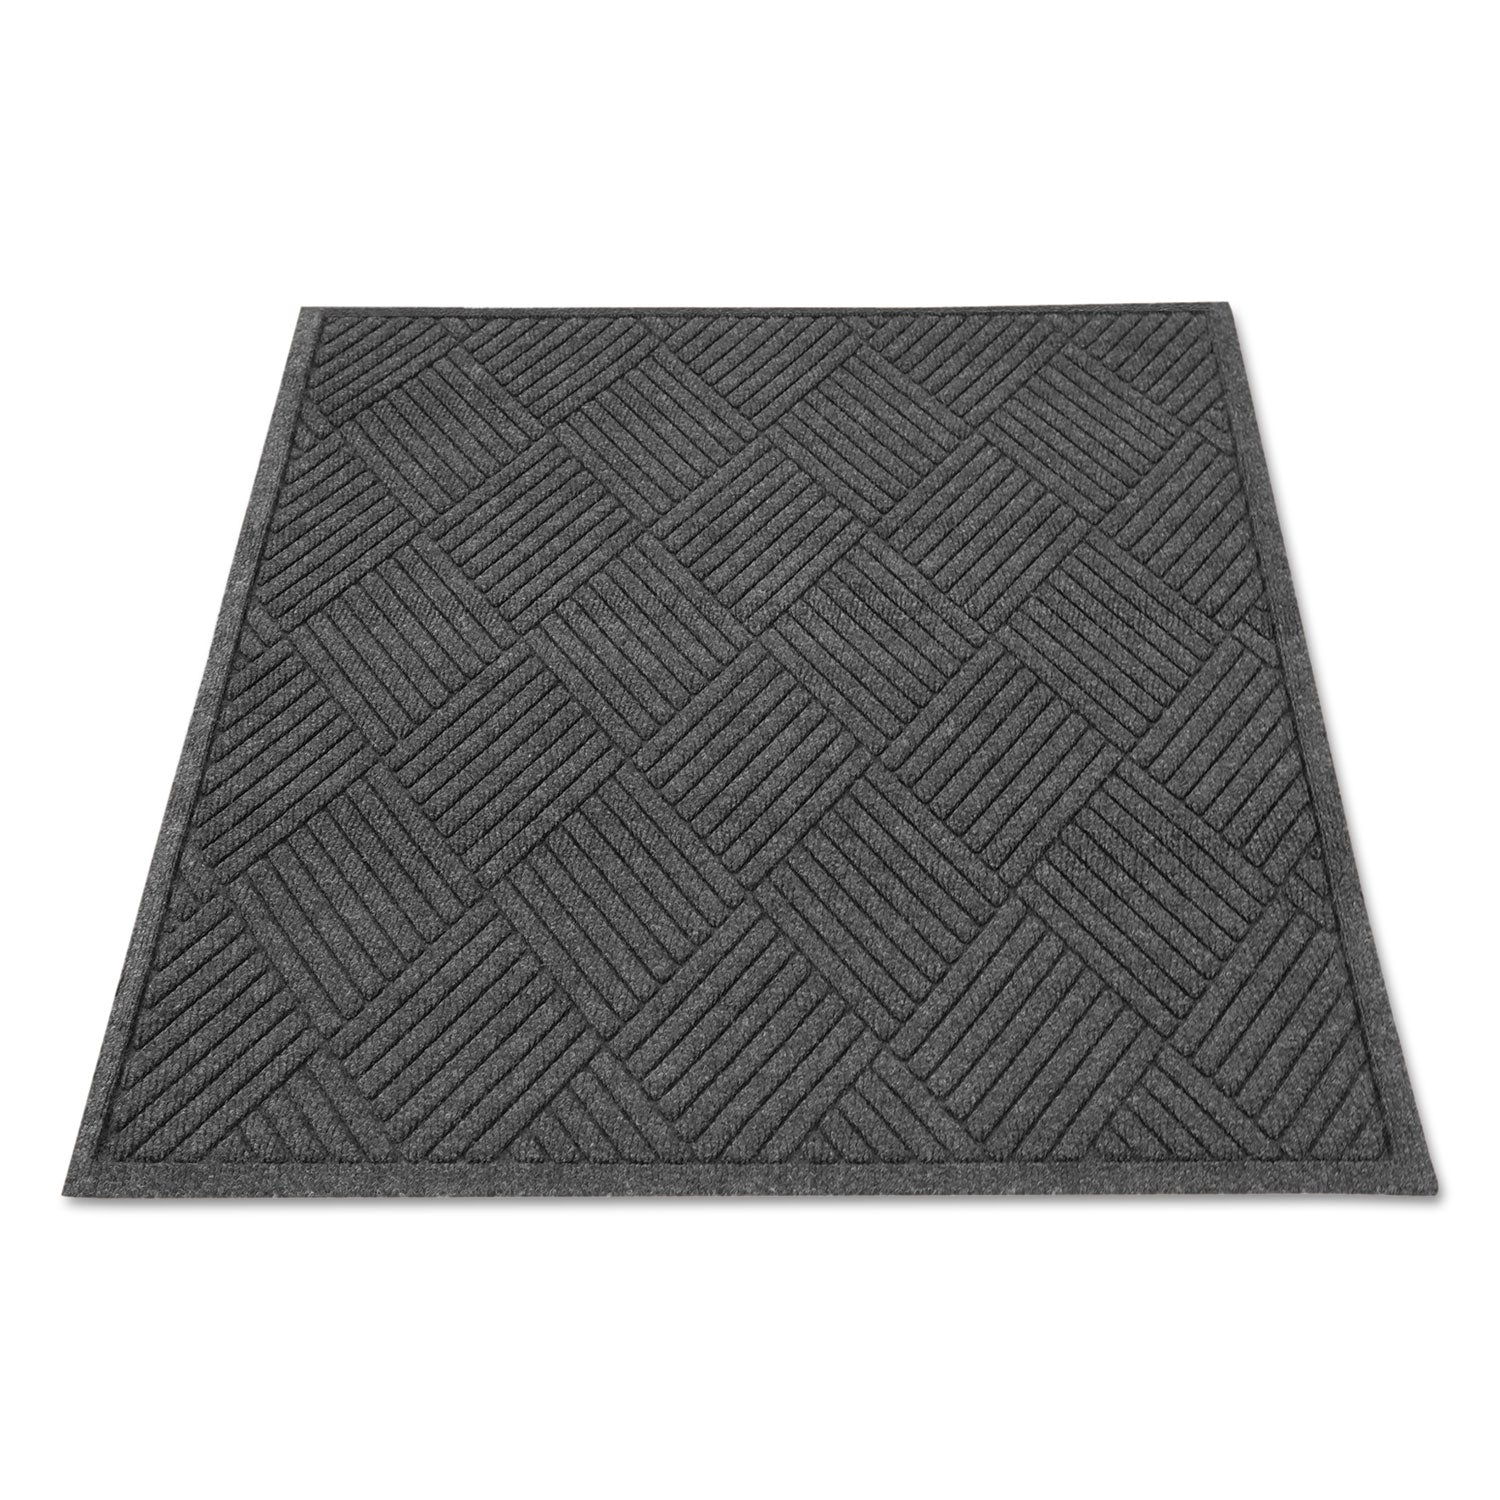 EcoGuard Diamond Floor Mat, Rectangular, 36 x 48, Charcoal - 